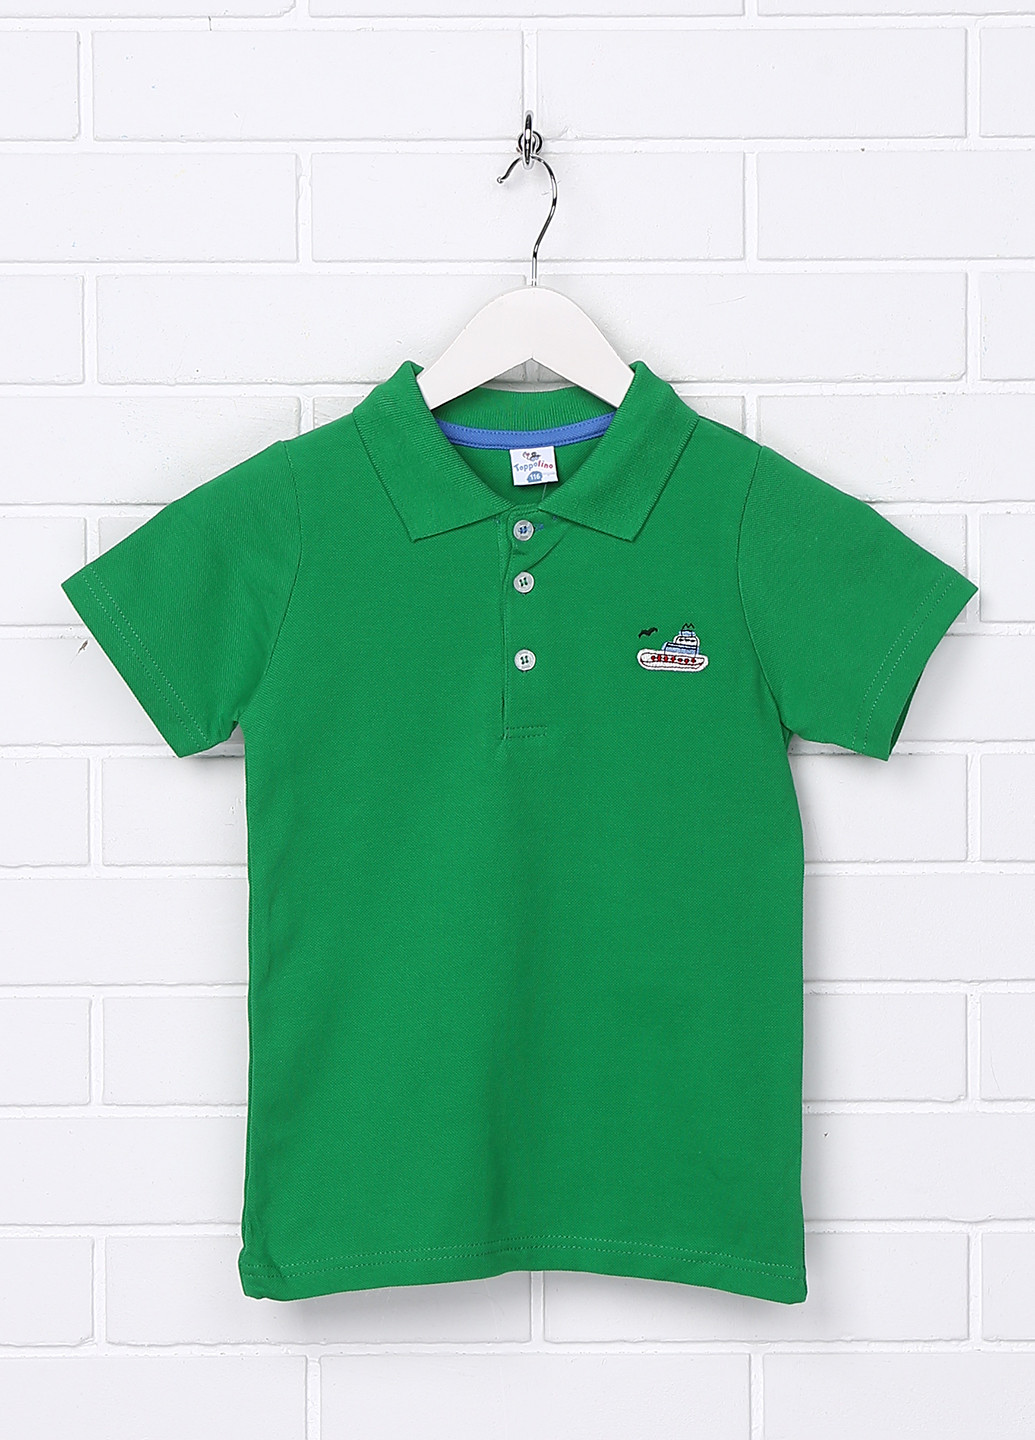 Зеленая детская футболка-поло для мальчика Topolino с рисунком